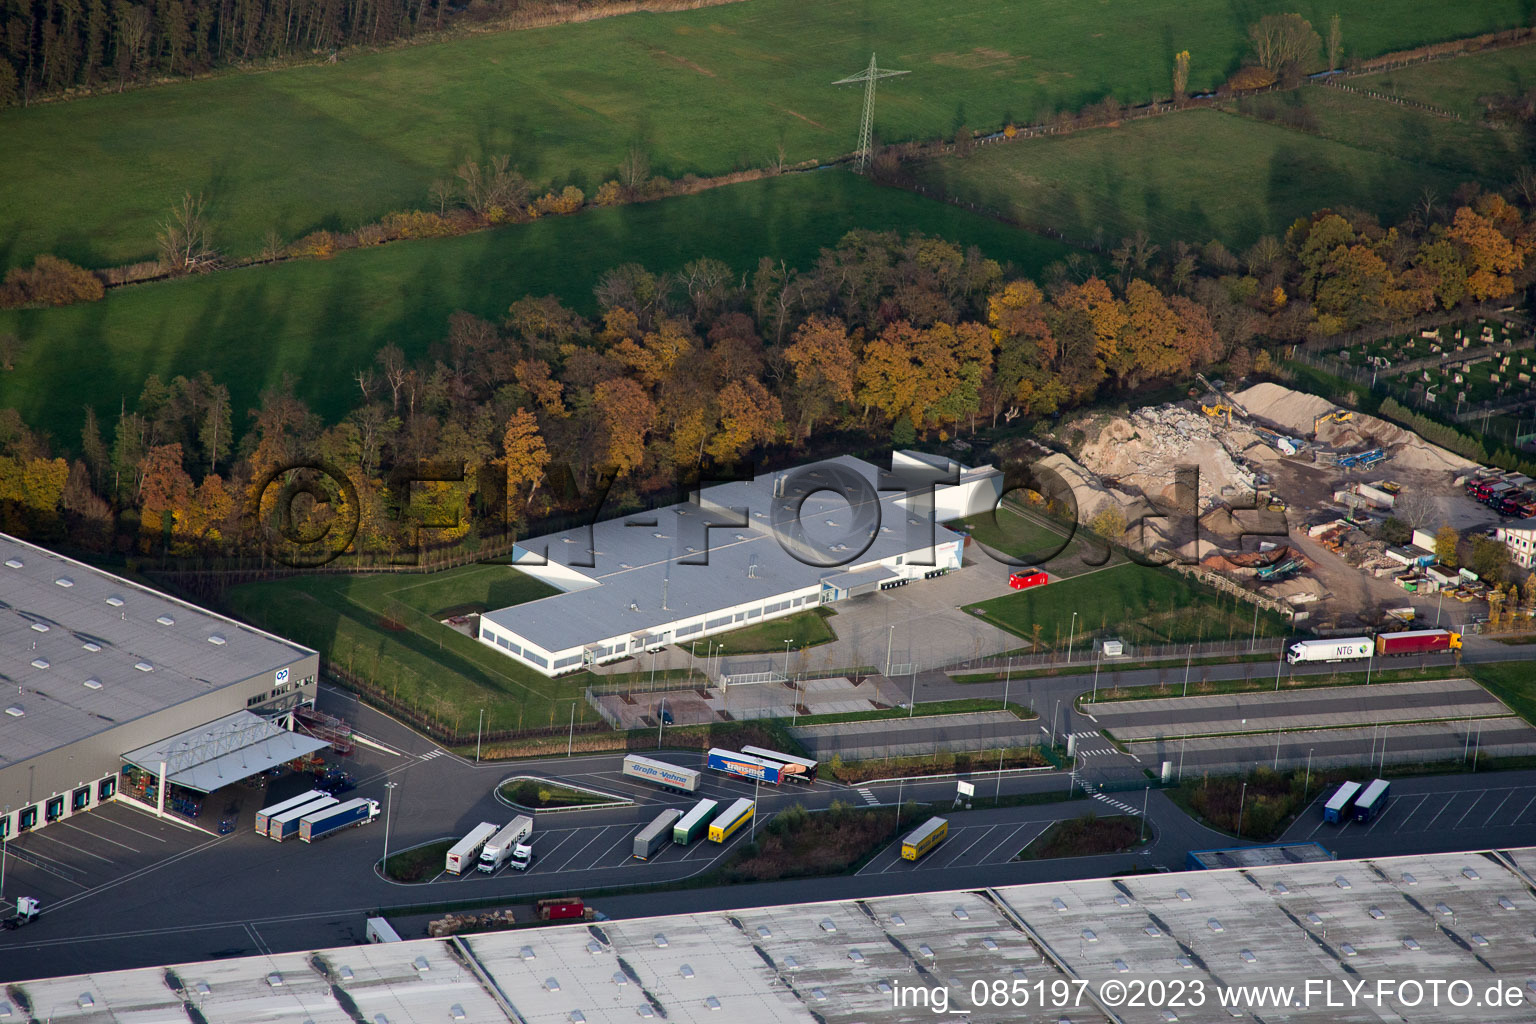 Zone industrielle Horst, Alfa Aesar GmbH à le quartier Minderslachen in Kandel dans le département Rhénanie-Palatinat, Allemagne d'en haut